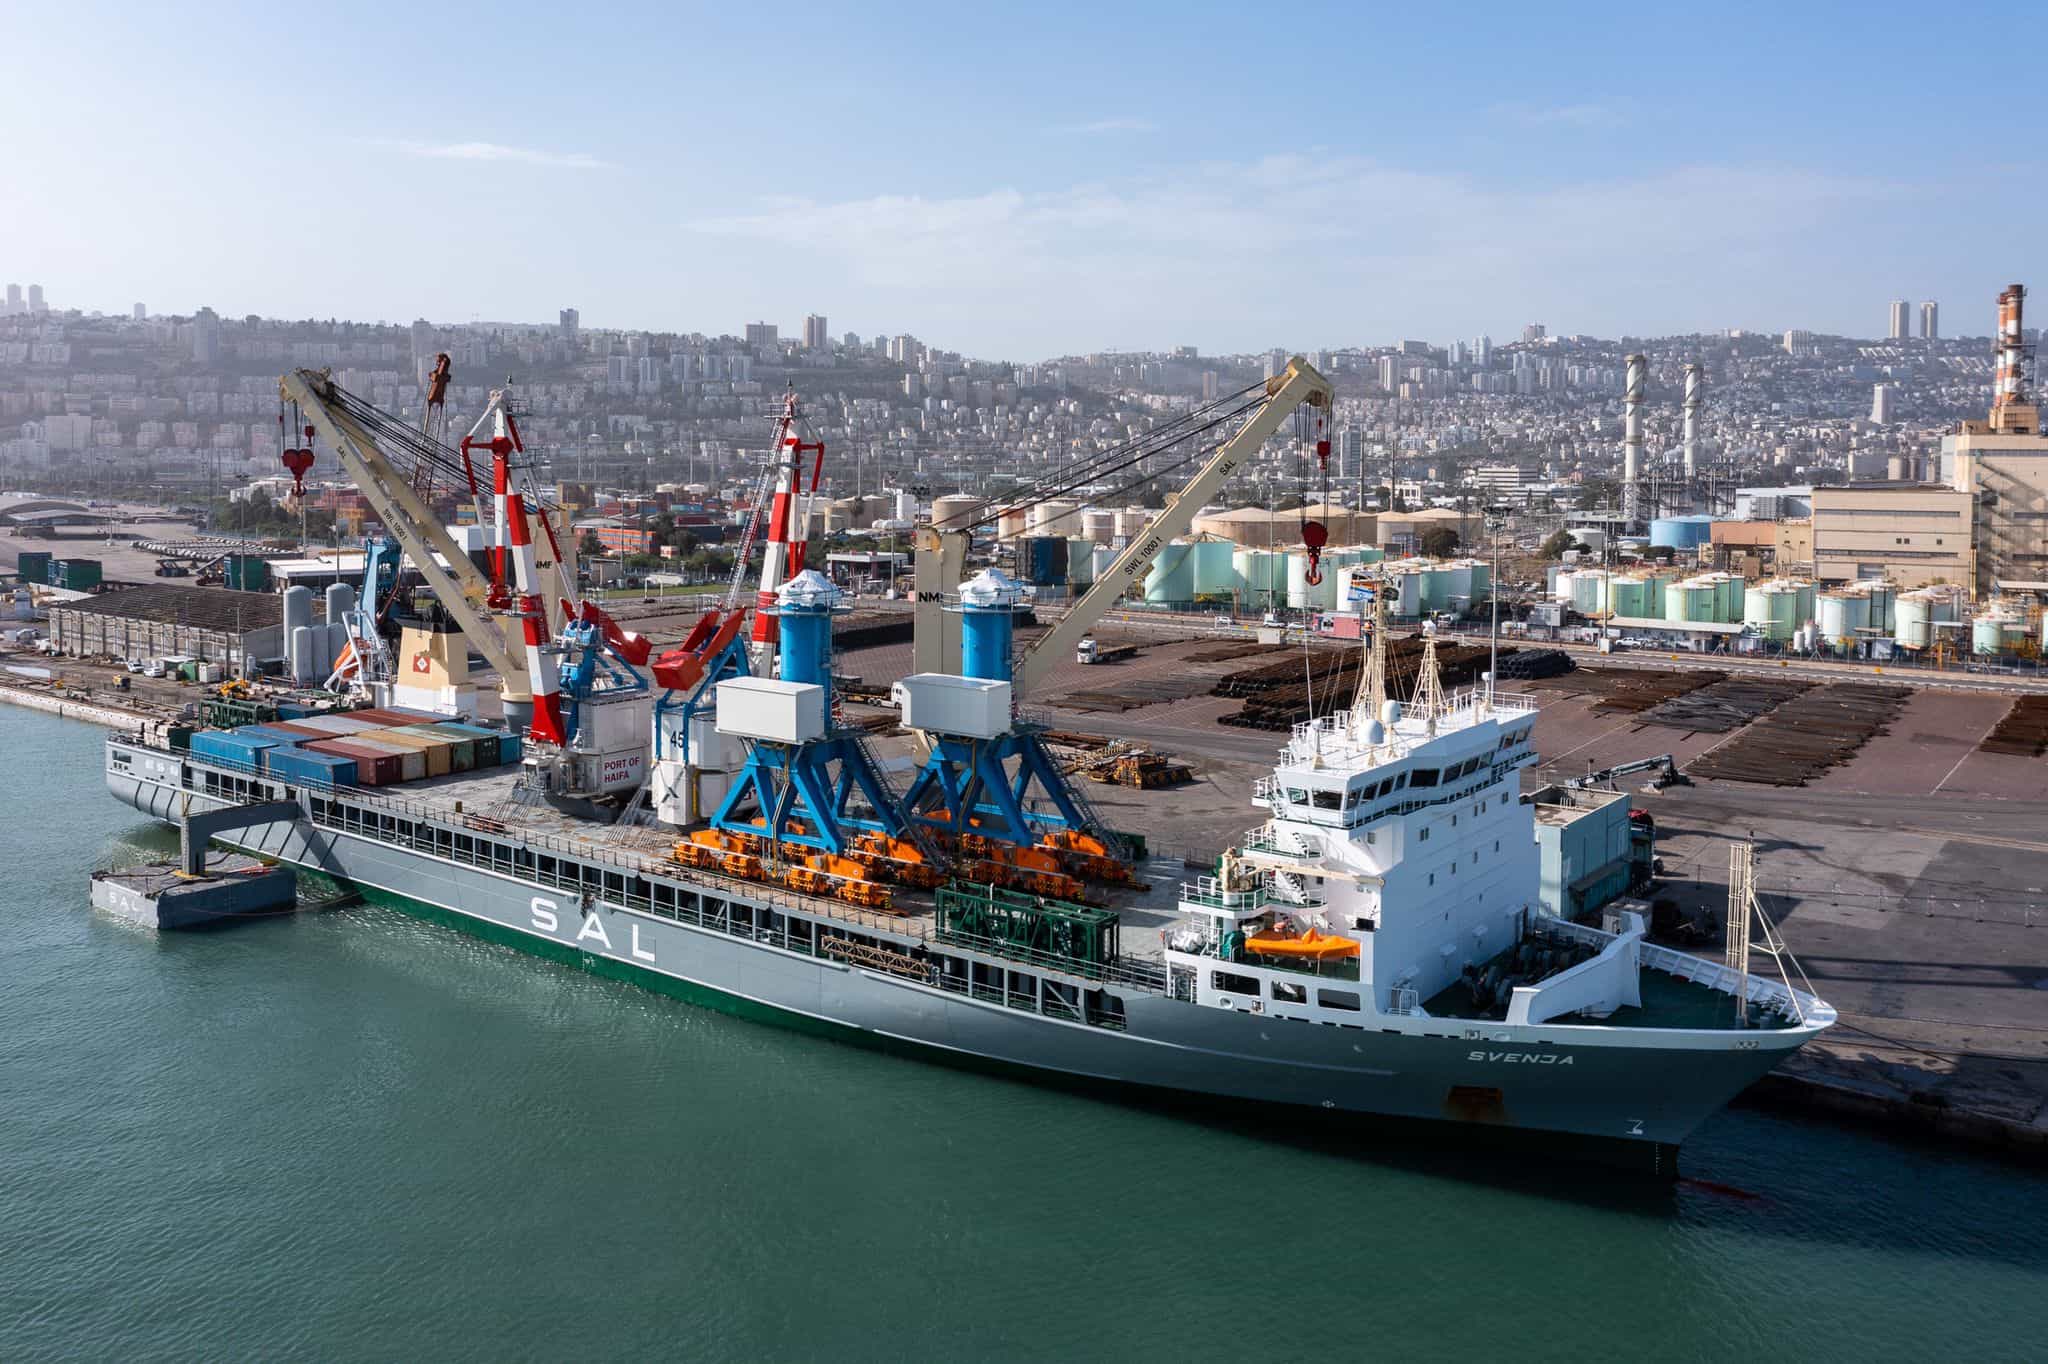 נמל חיפה, צילומי רחפן: גיאודרונס